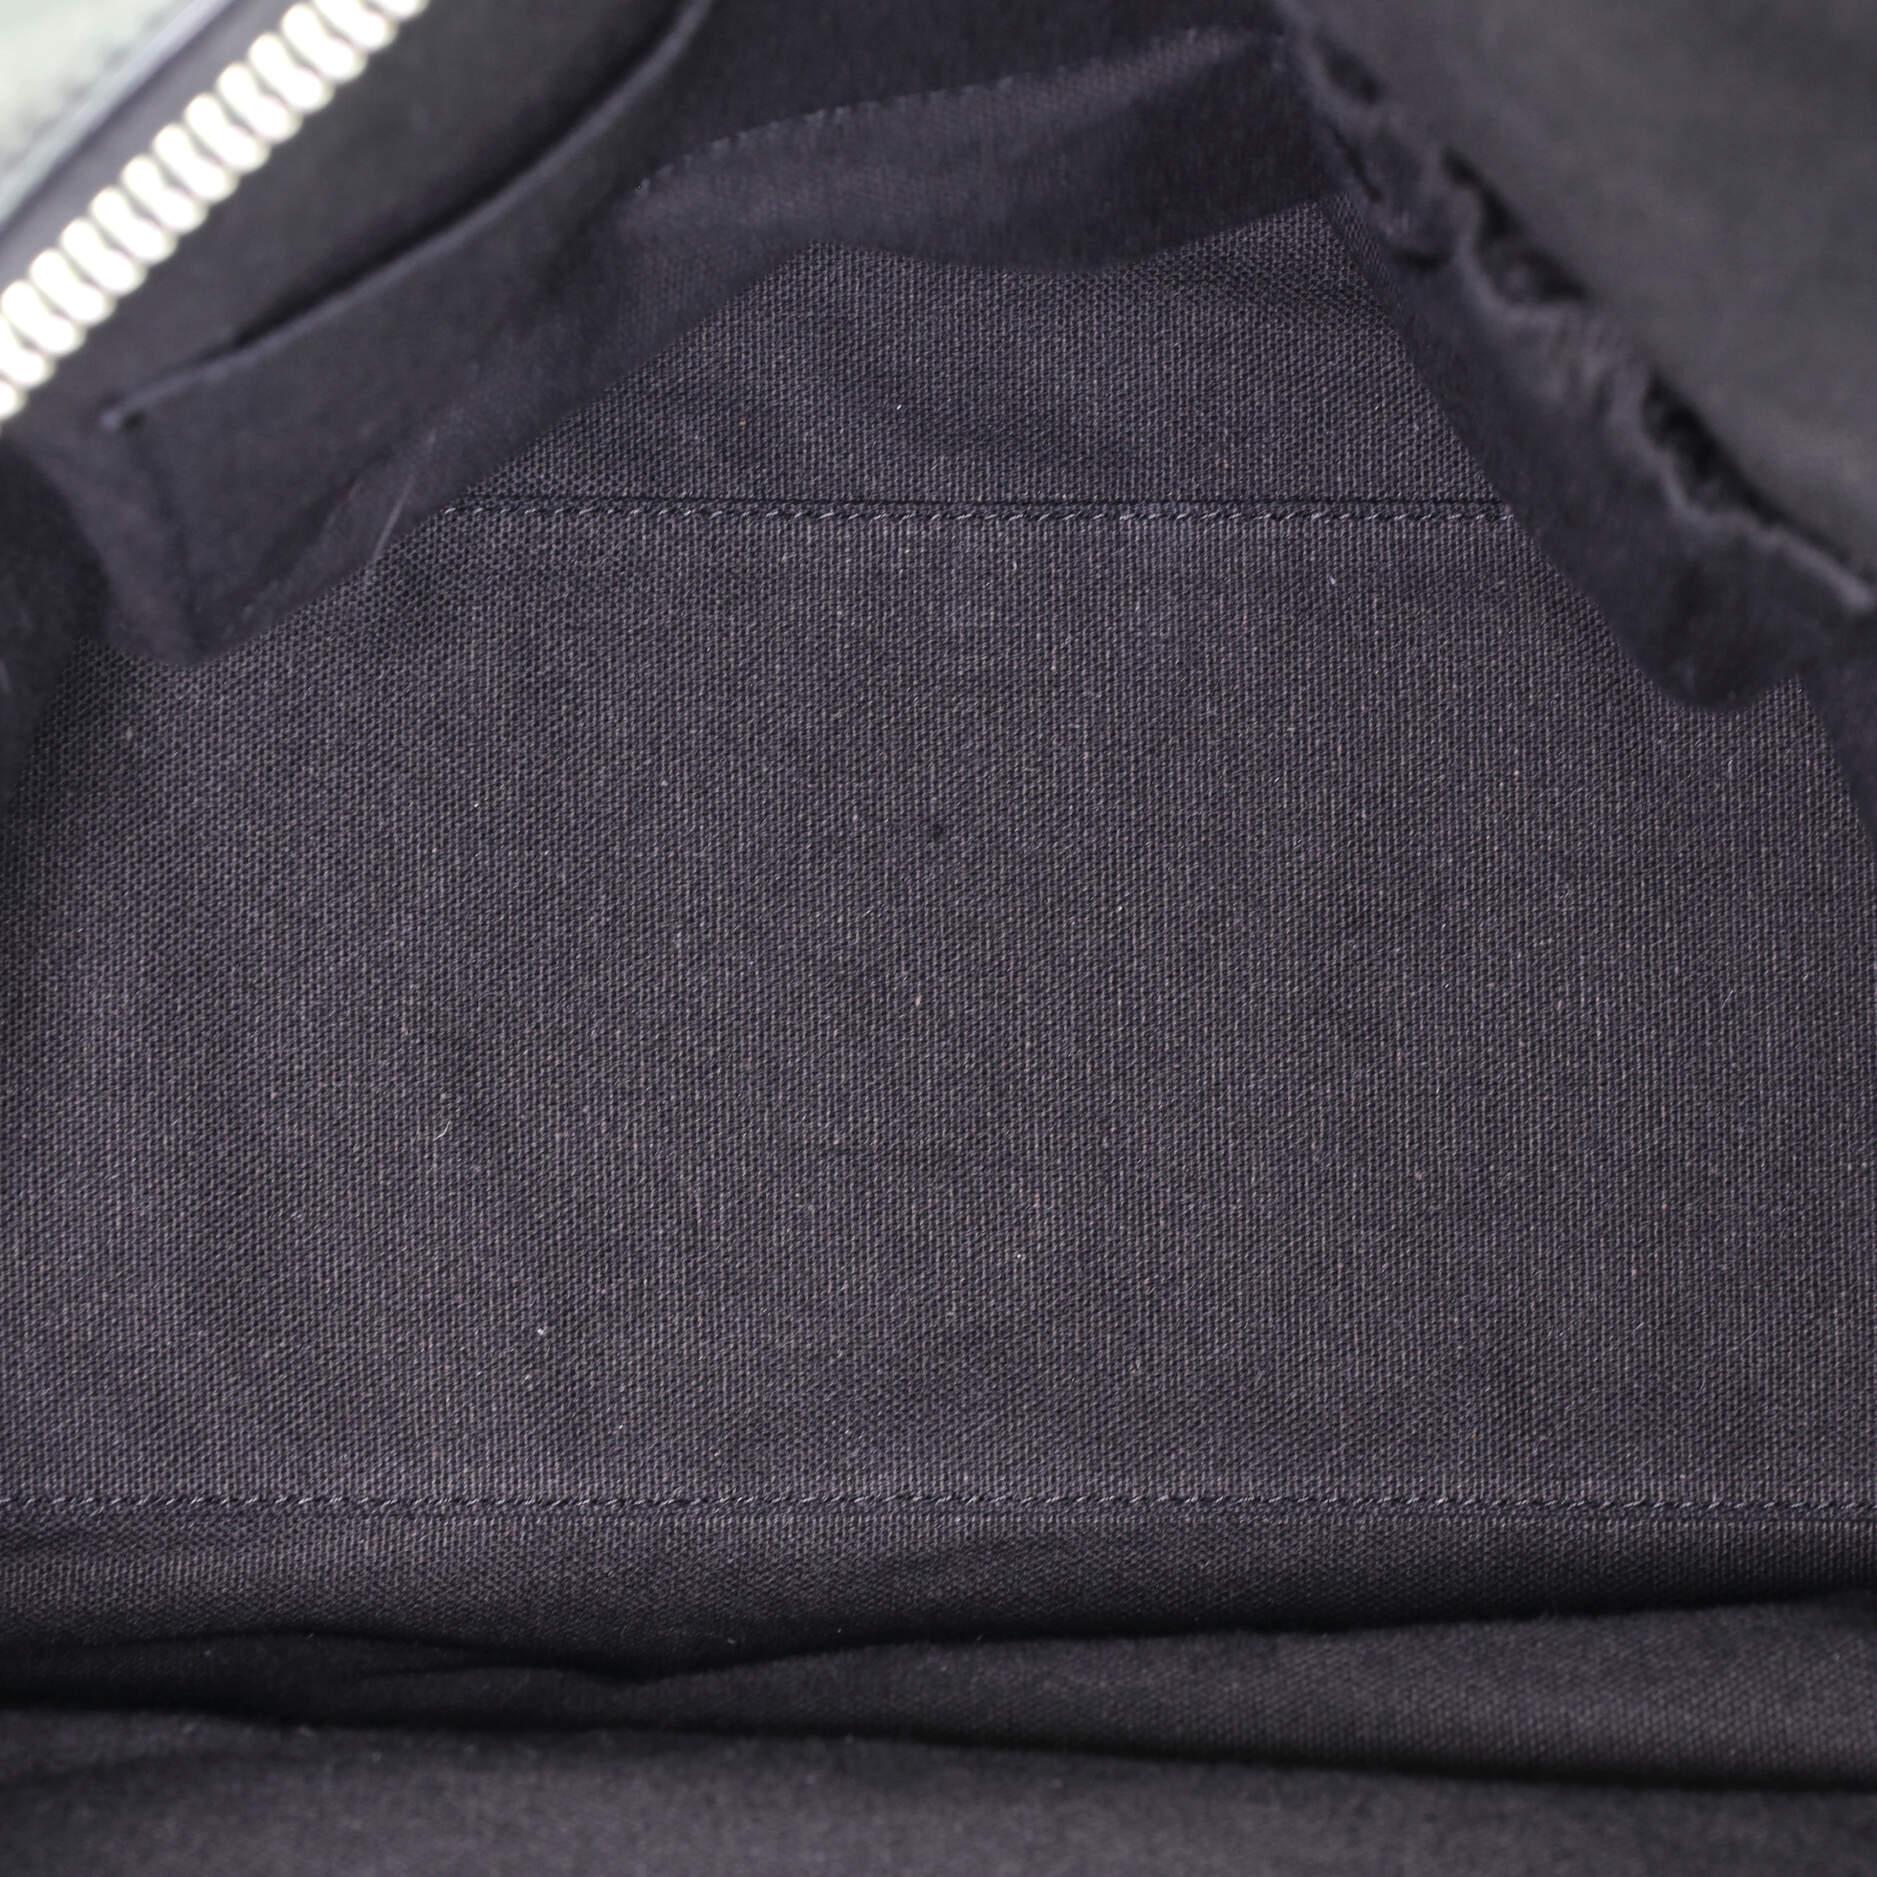 Givenchy Nightingale Satchel Studded Leather Medium 1